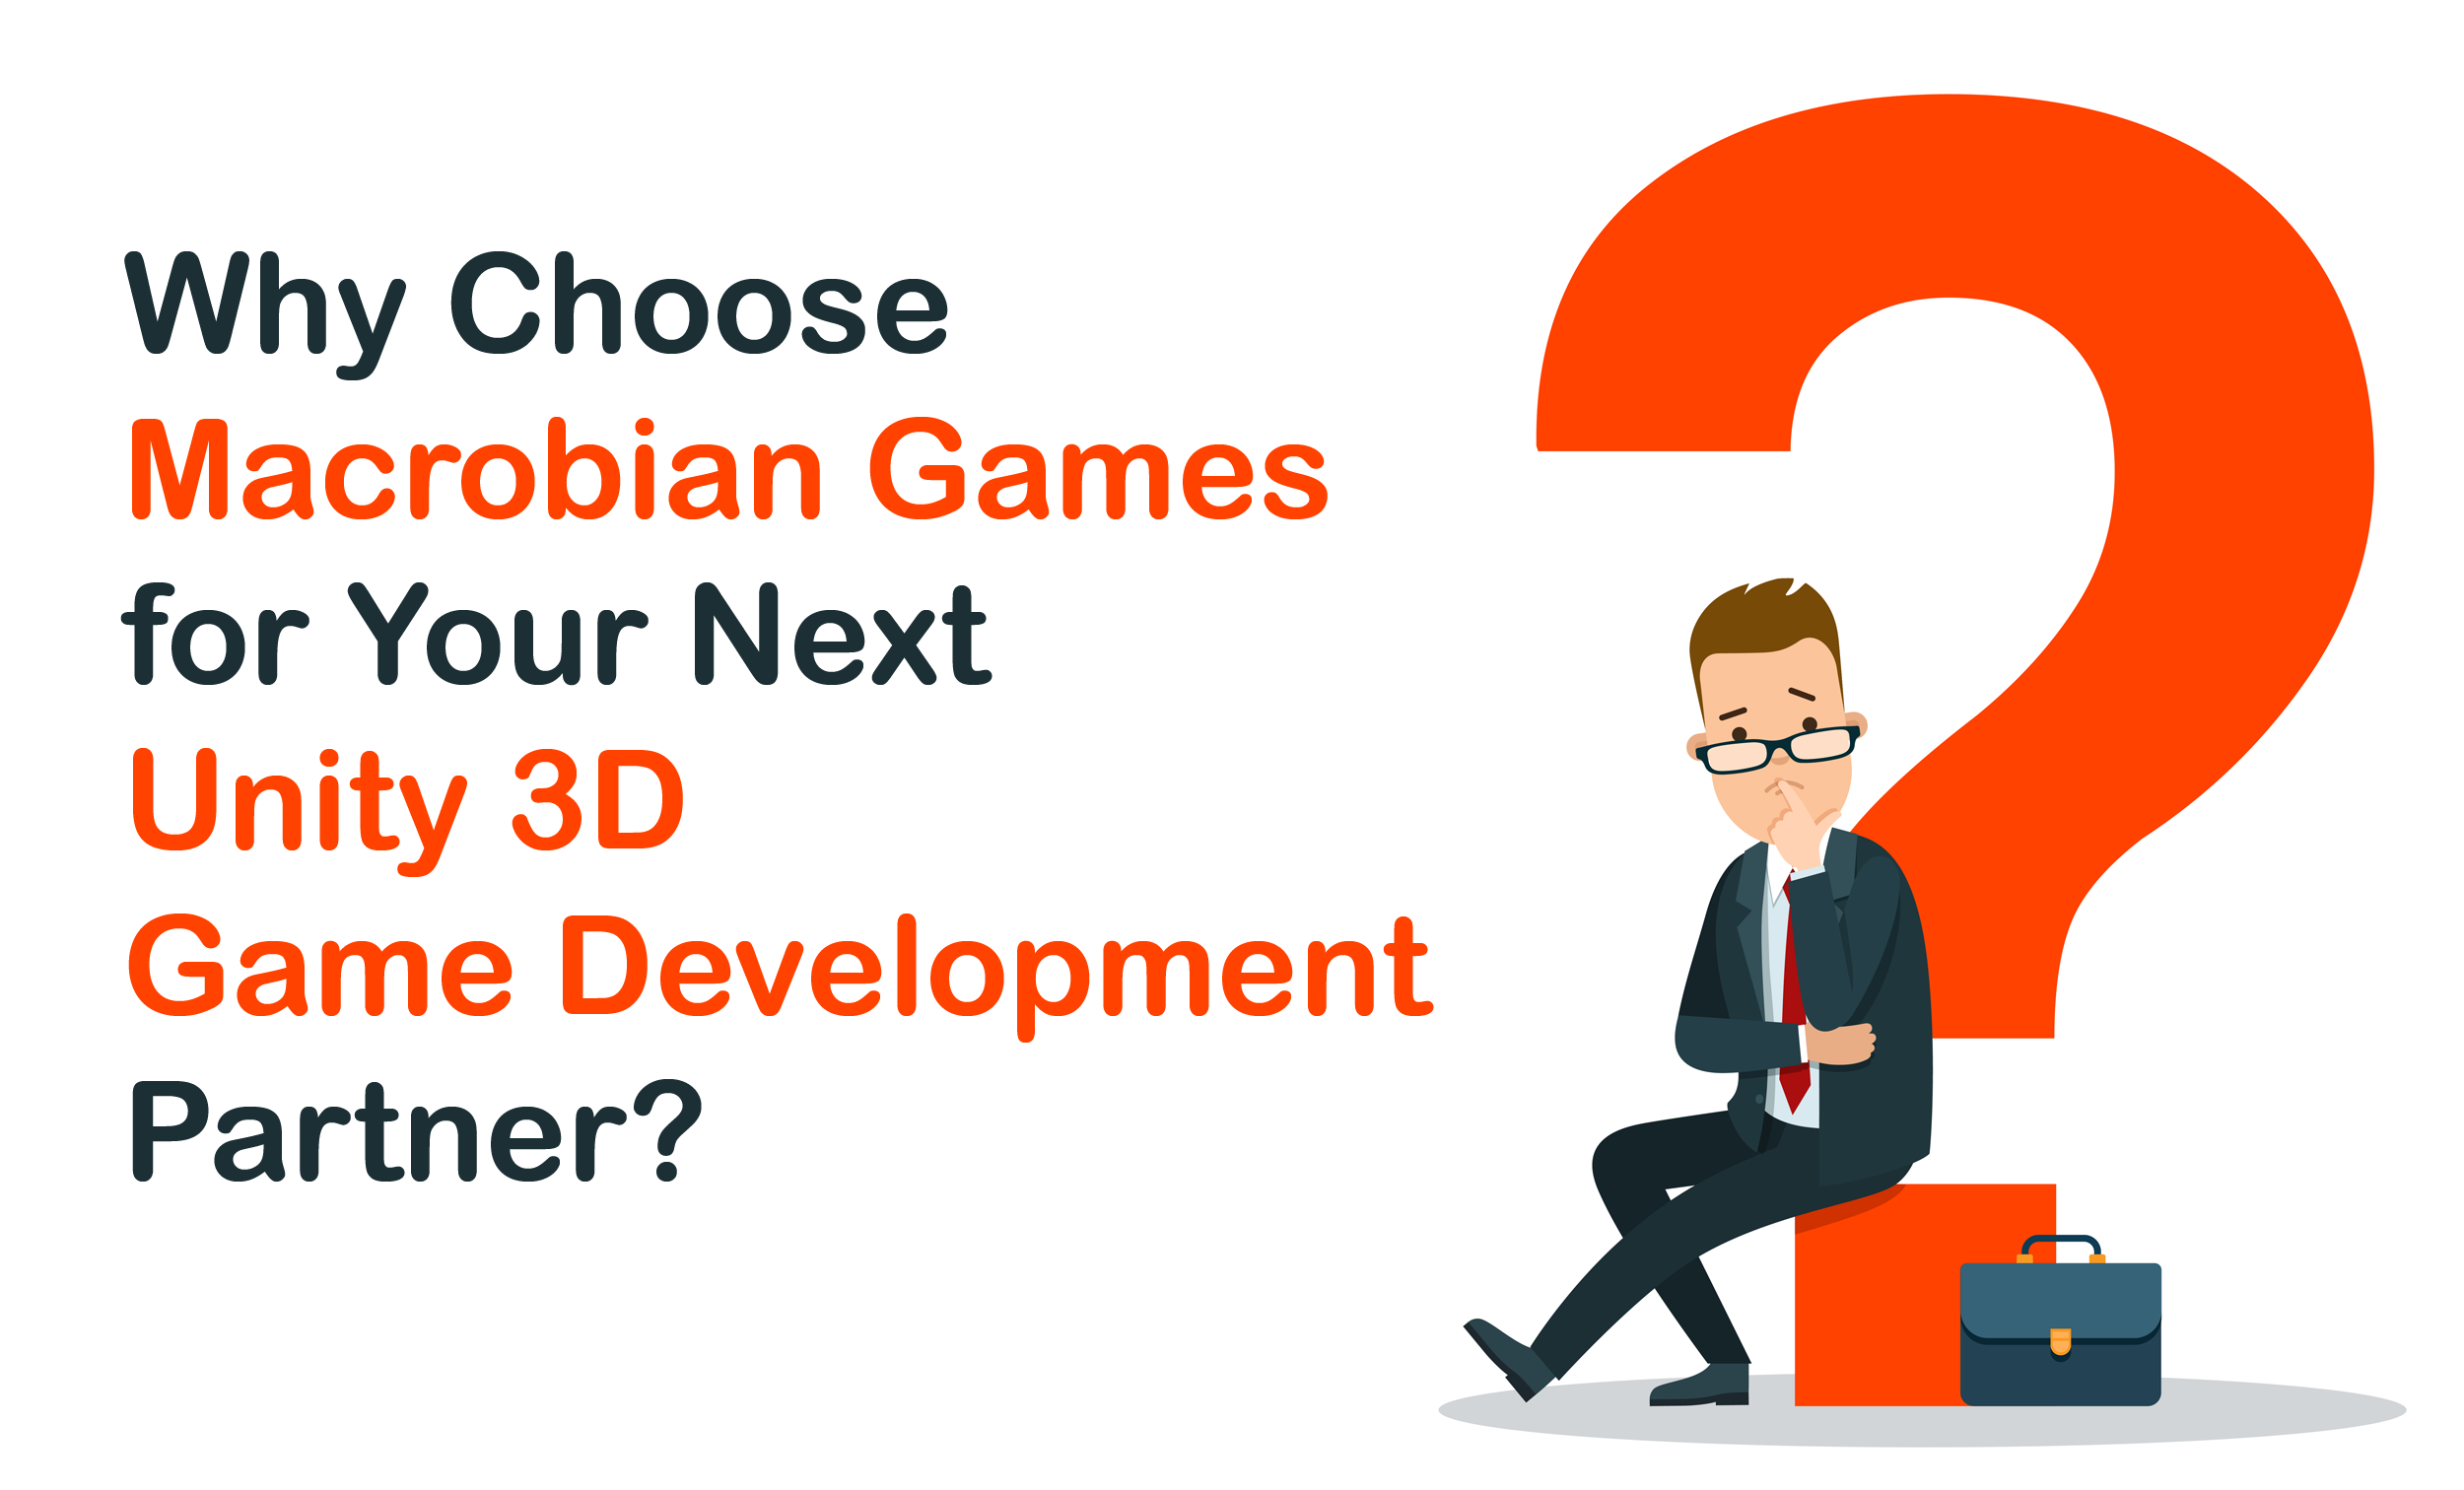 Why Choose Macrobian Games?